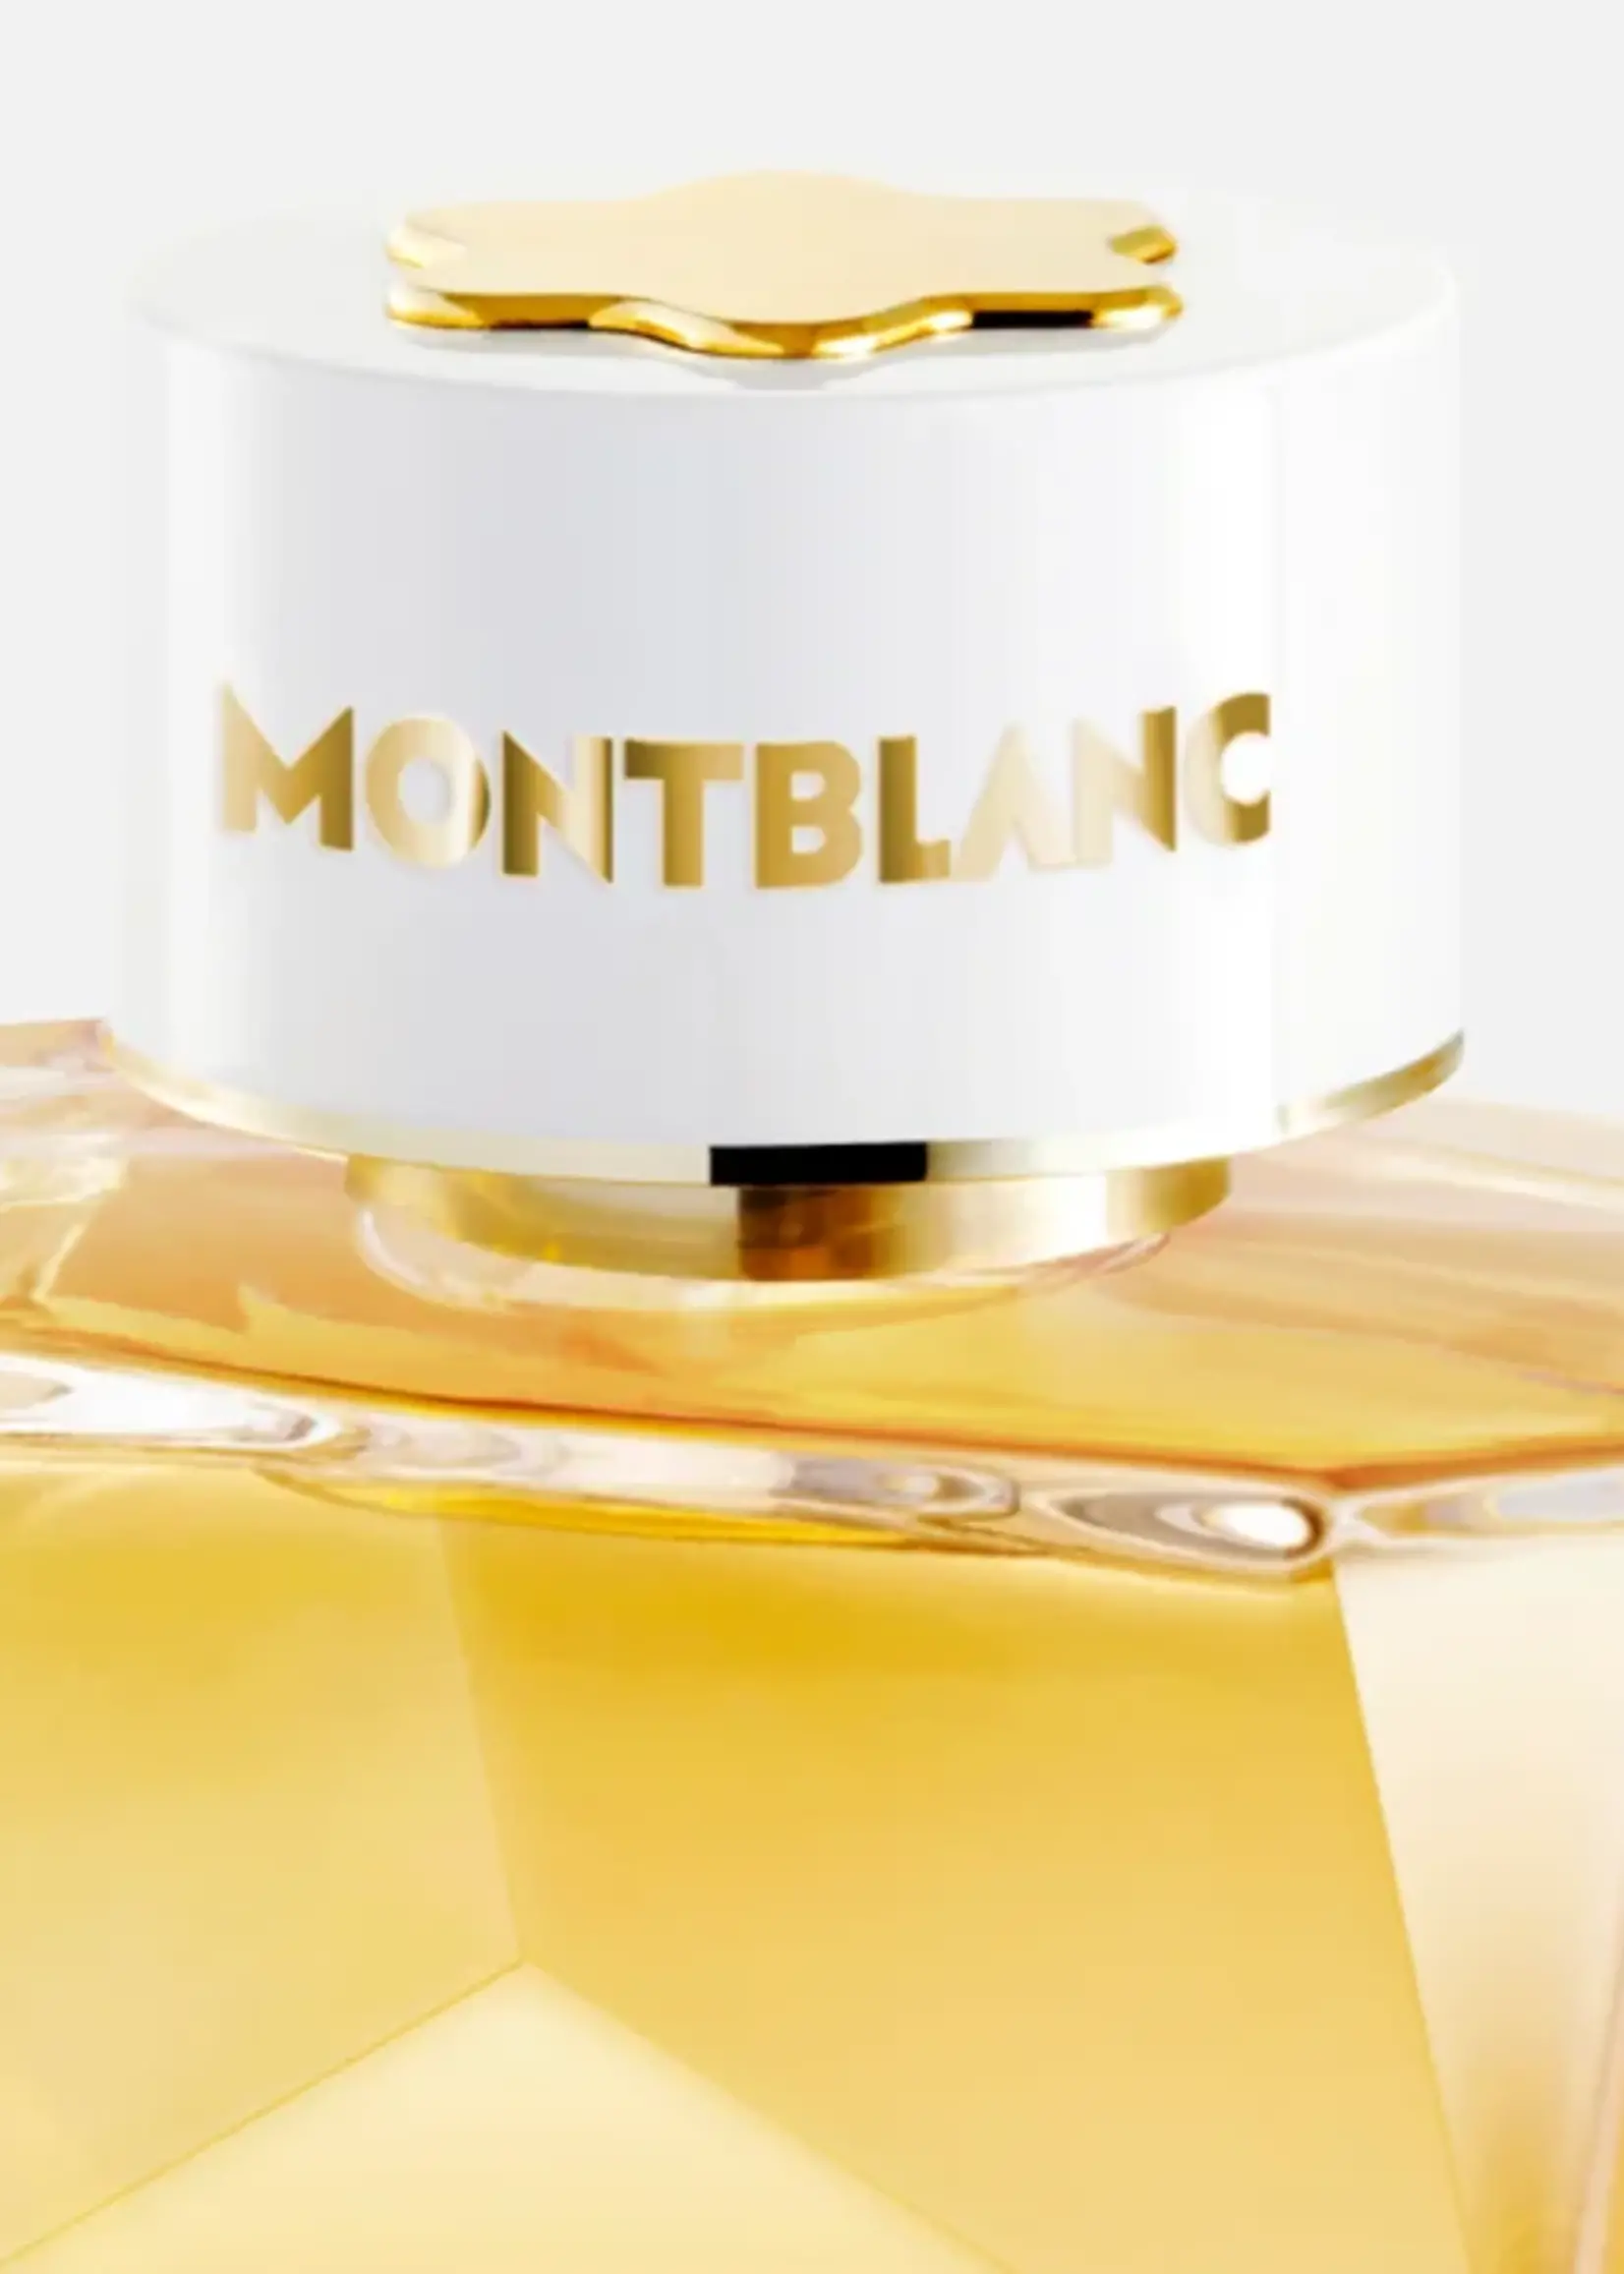 MONTBLANC Eau de Parfum Signature Absolue 50ml